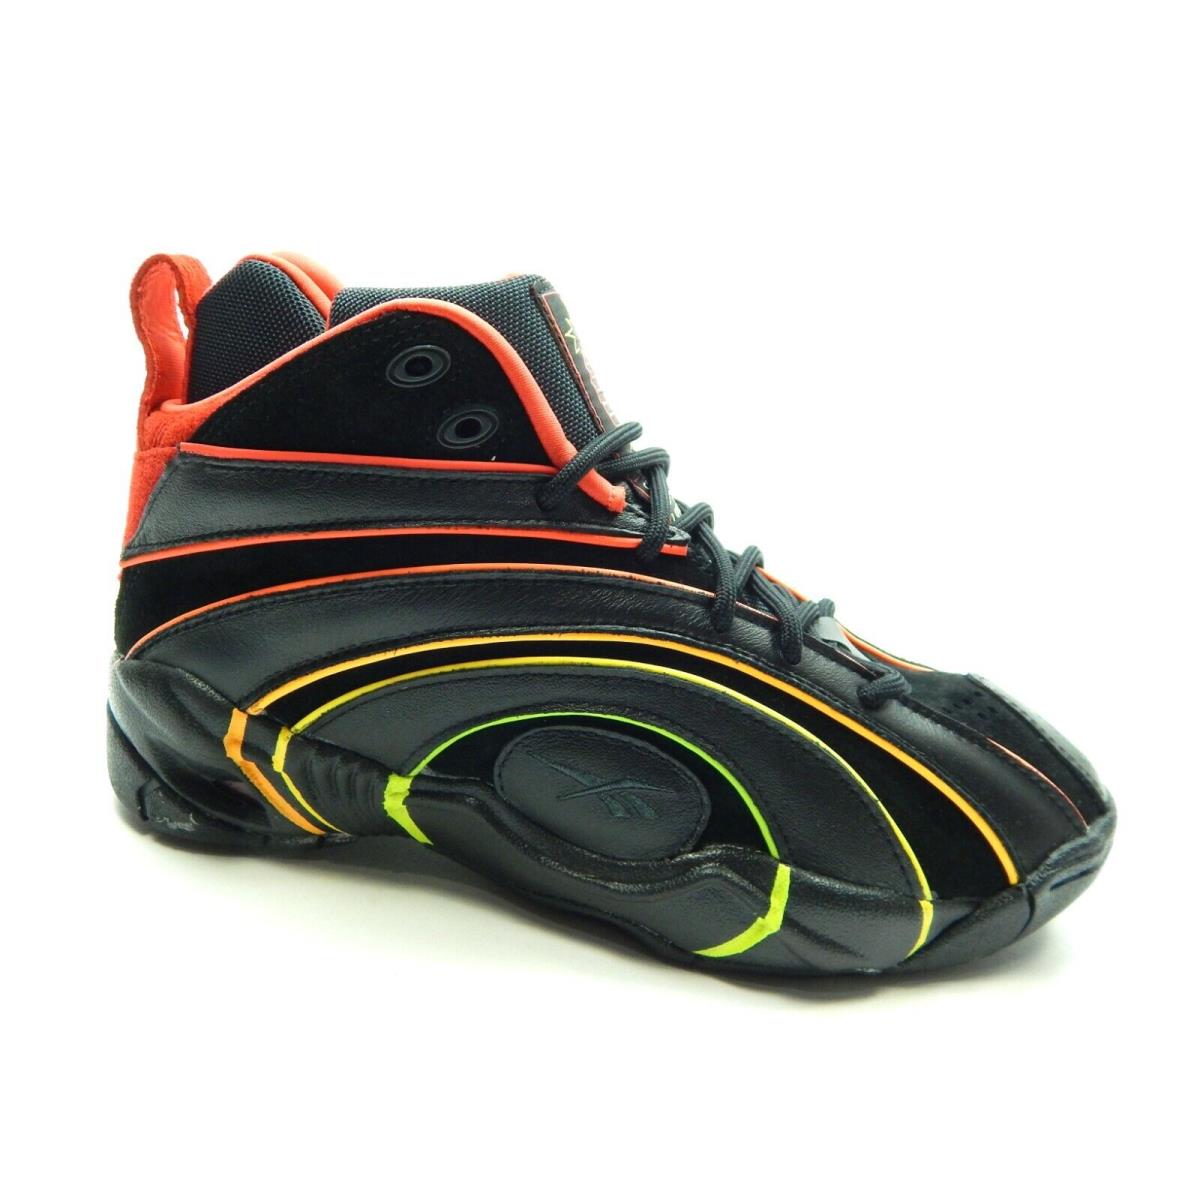 Reebok Shaqnosis Basketball H68851 Black Red Men Shoes